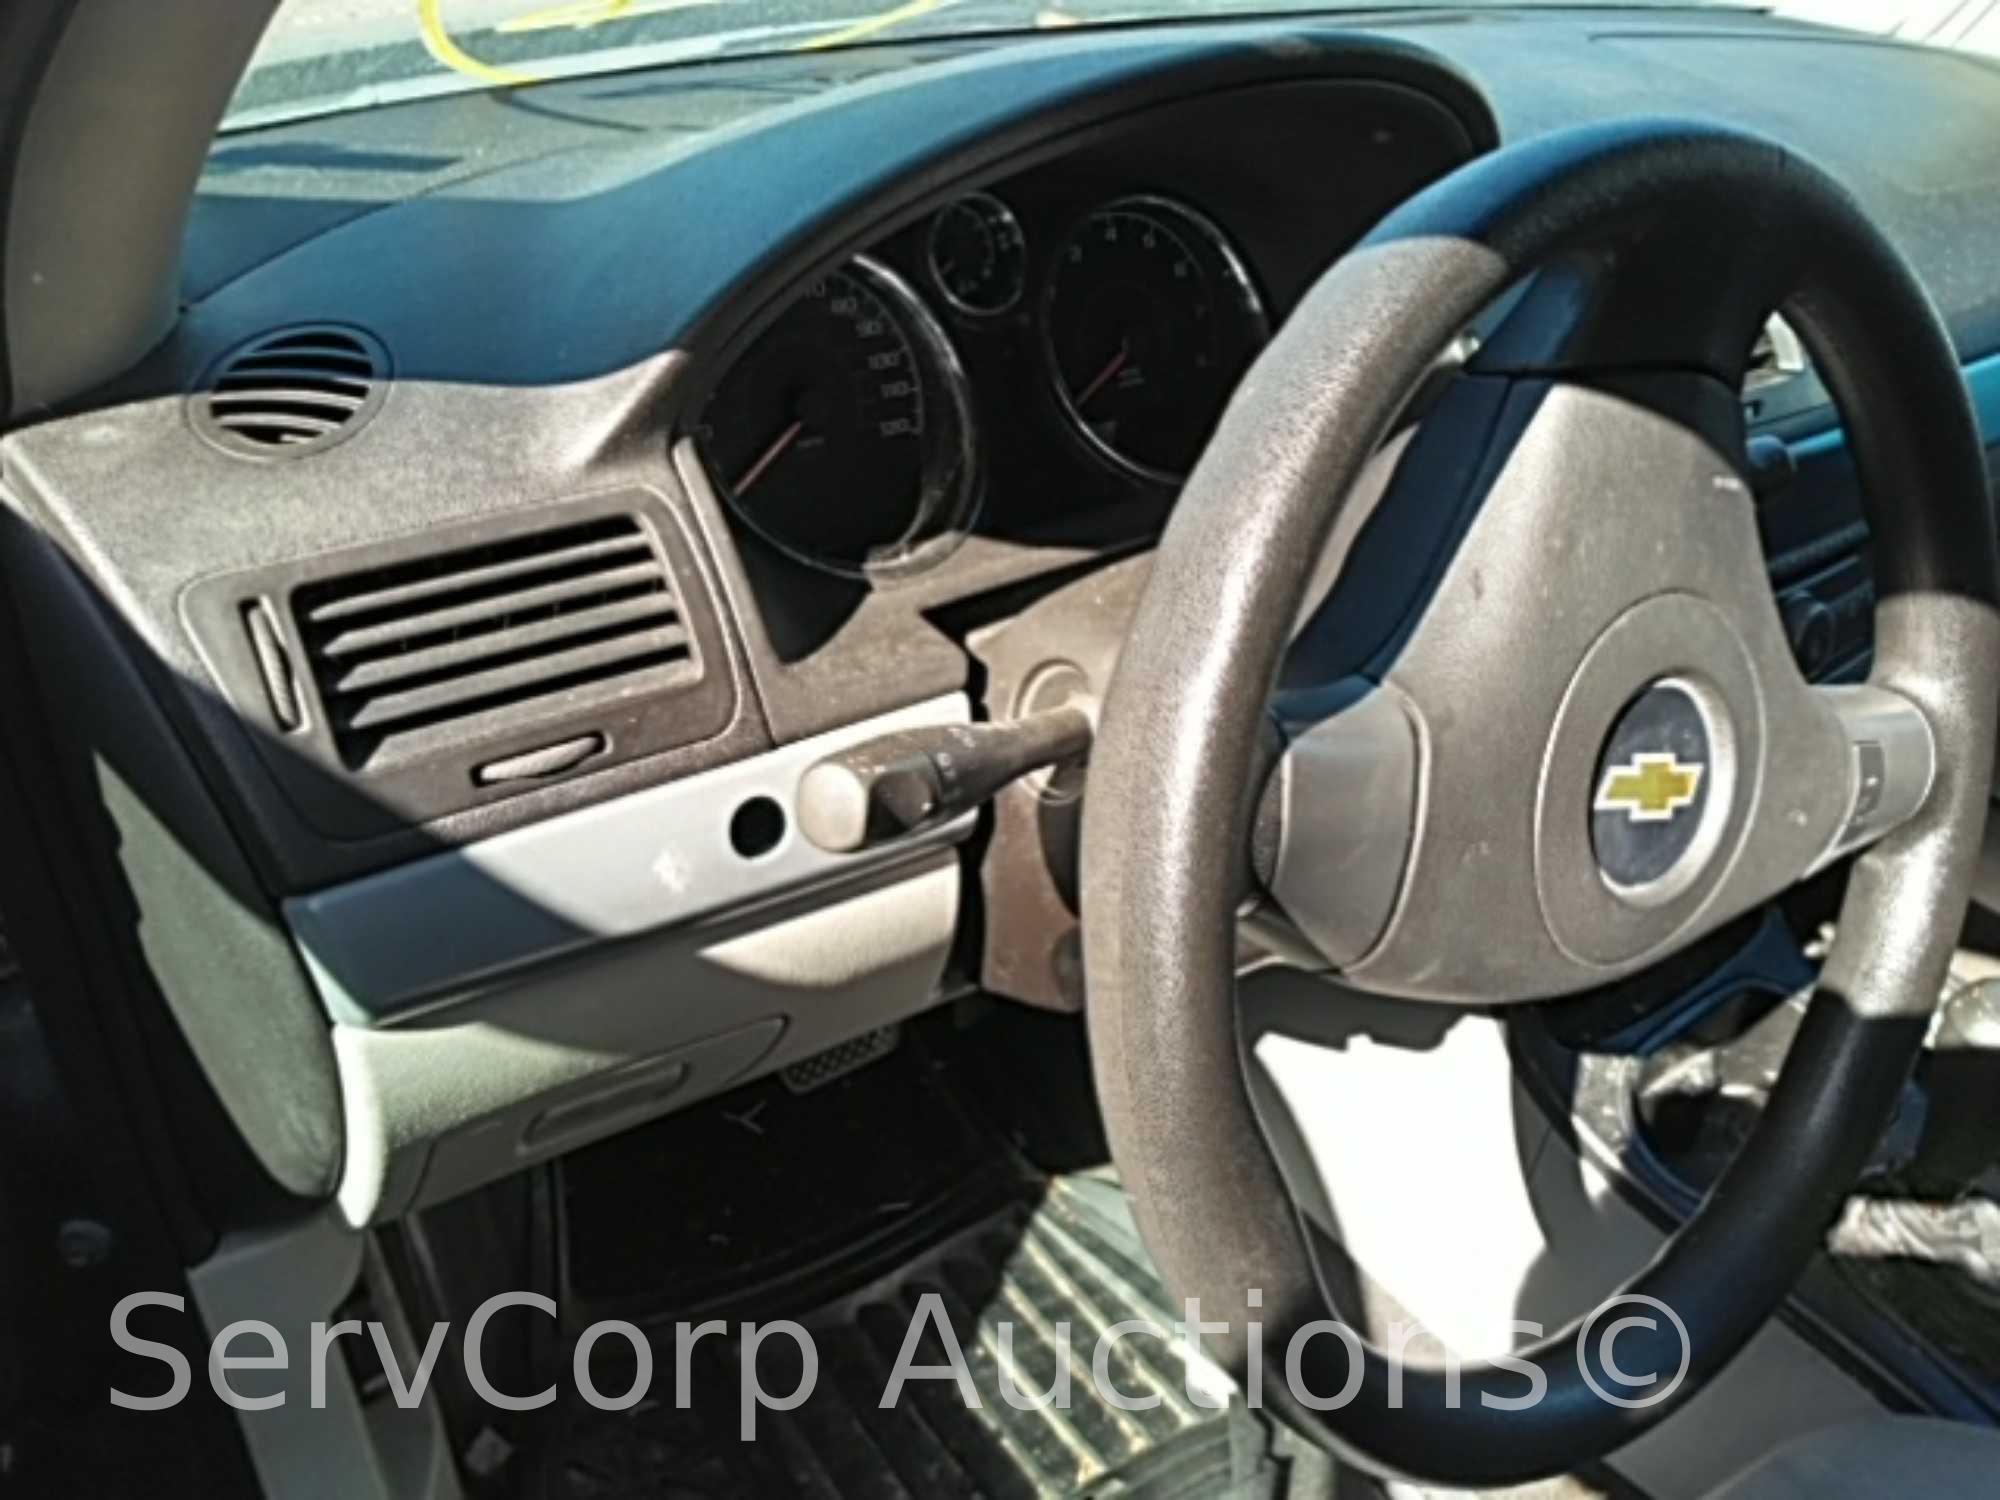 2010 Chevrolet Cobalt Passenger Car, VIN # 1G1AB5F5XA7120291